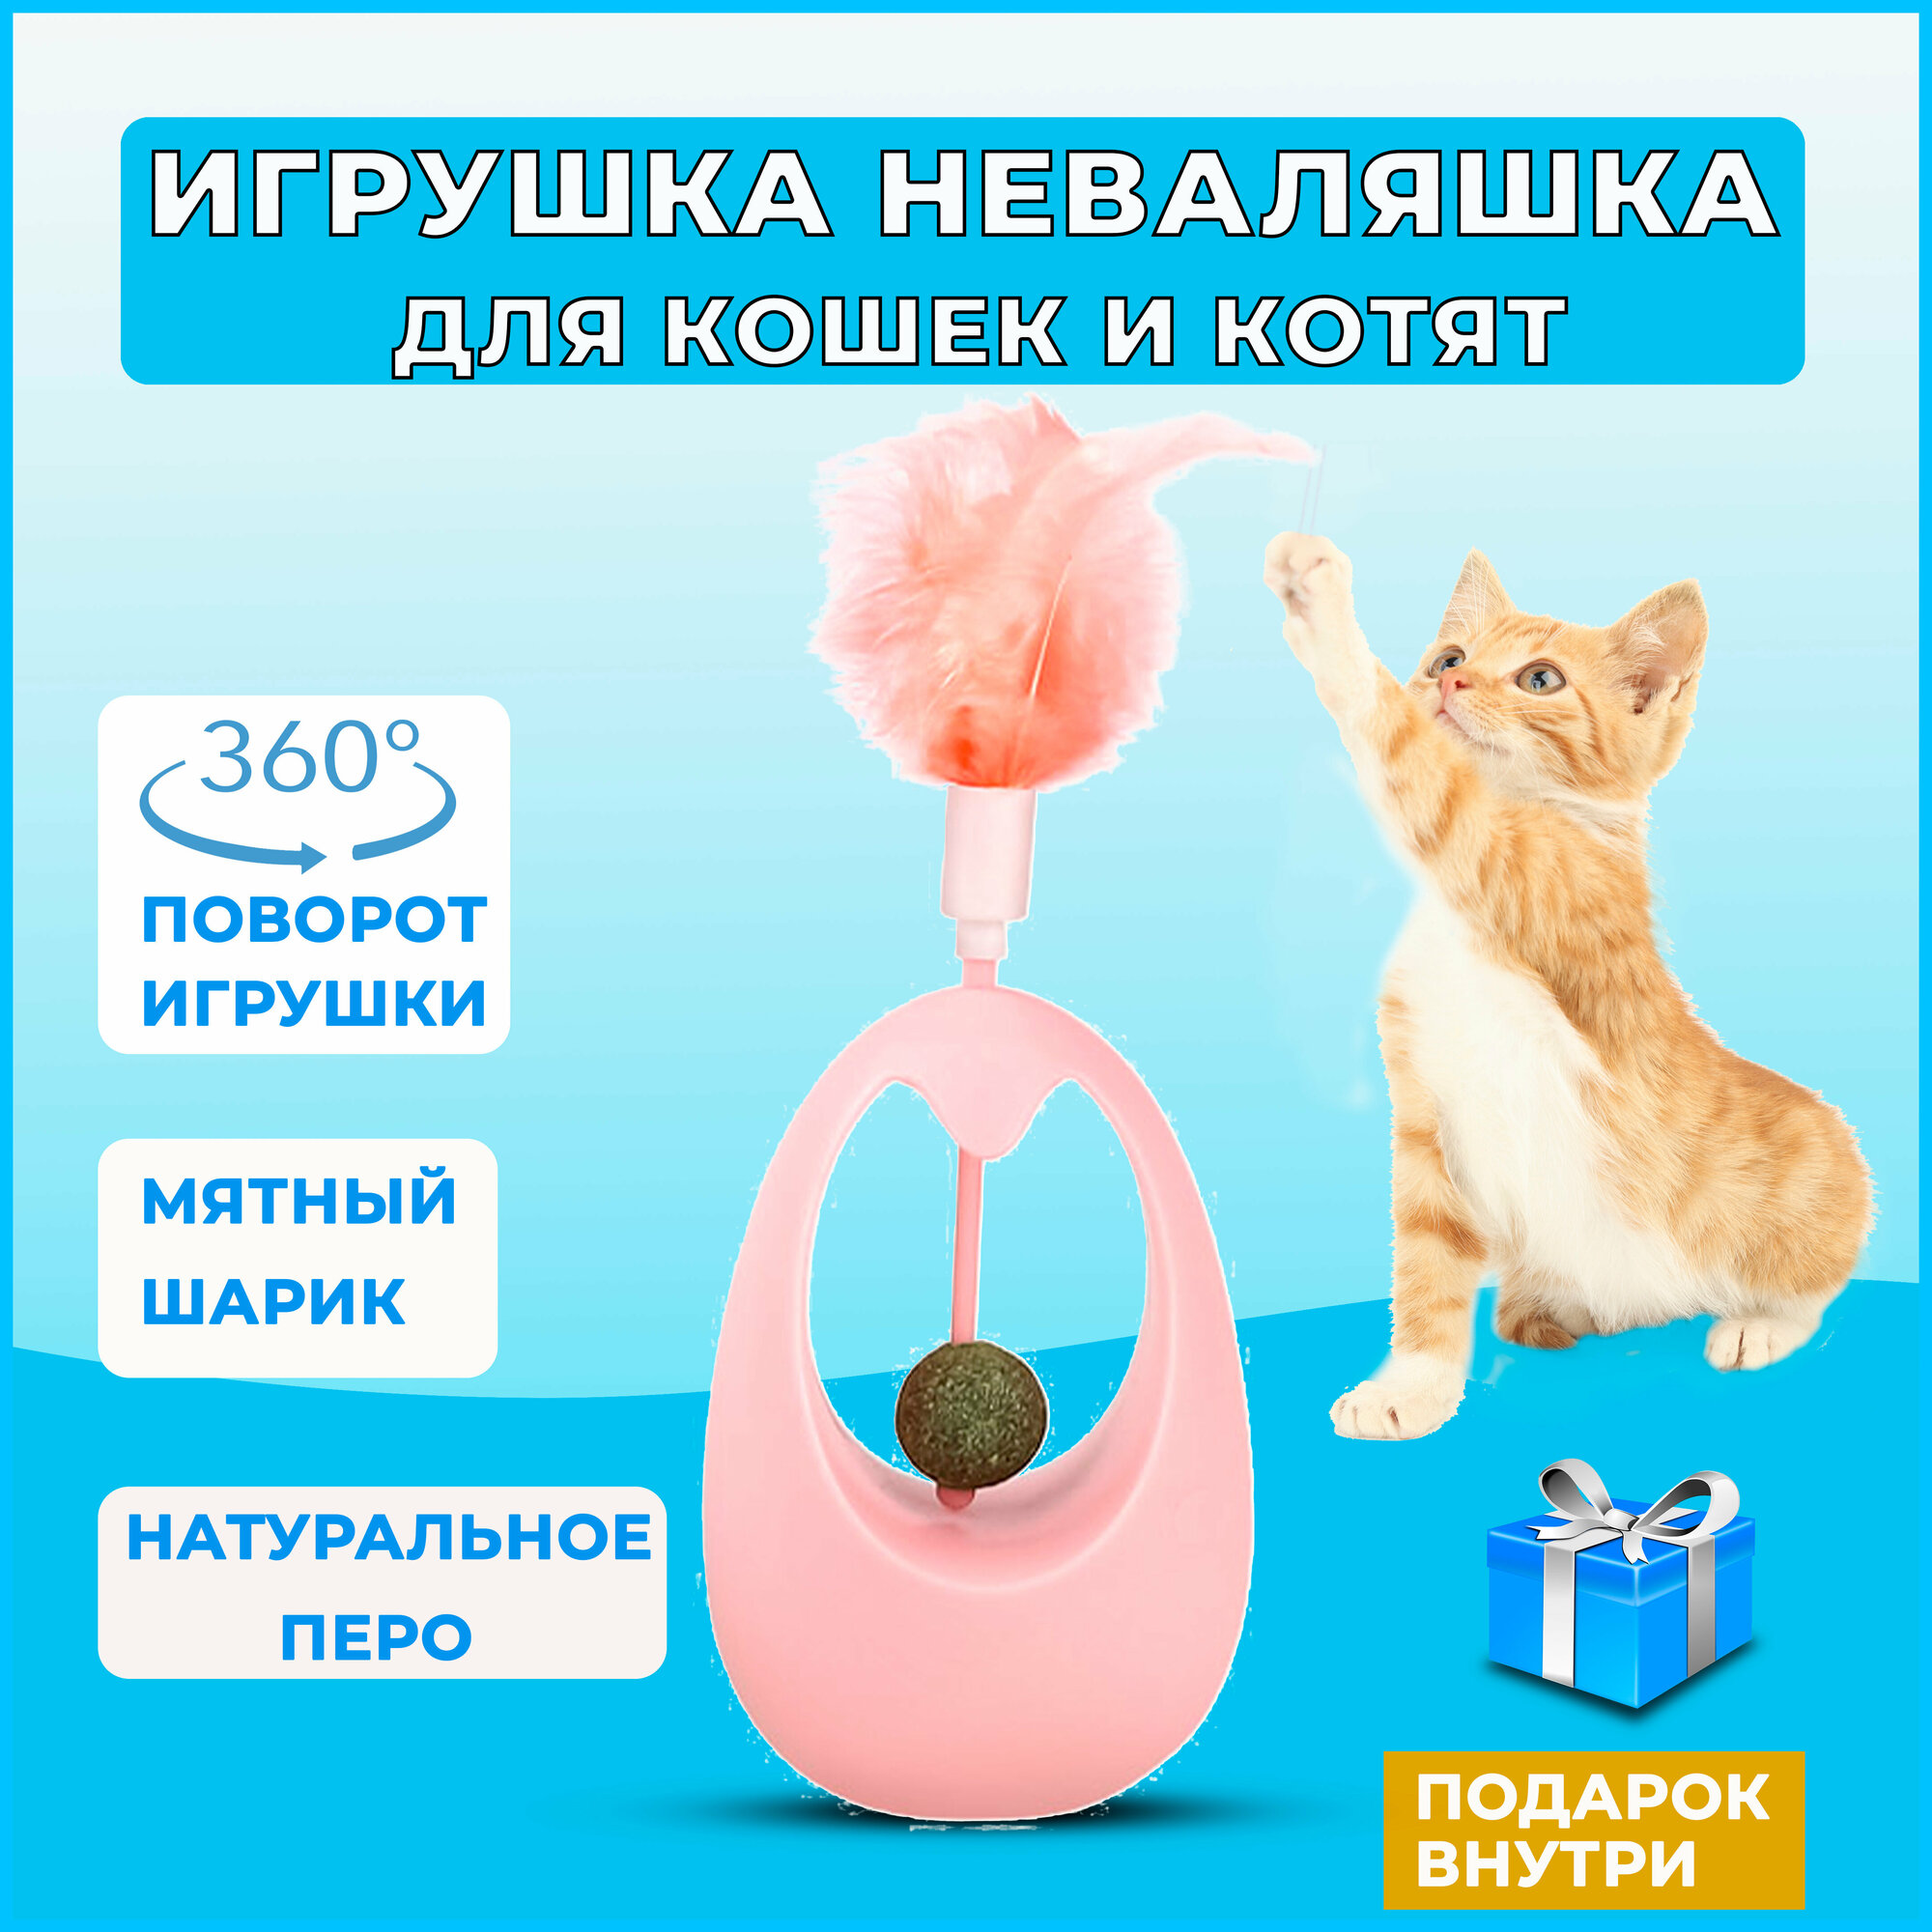 Неваляшка для кошек с кошачьей мятой, игрушка для кошек неваляшка с кошачьей мятой, интерактивная игрушка дразнилка для кошек и котят с перьями